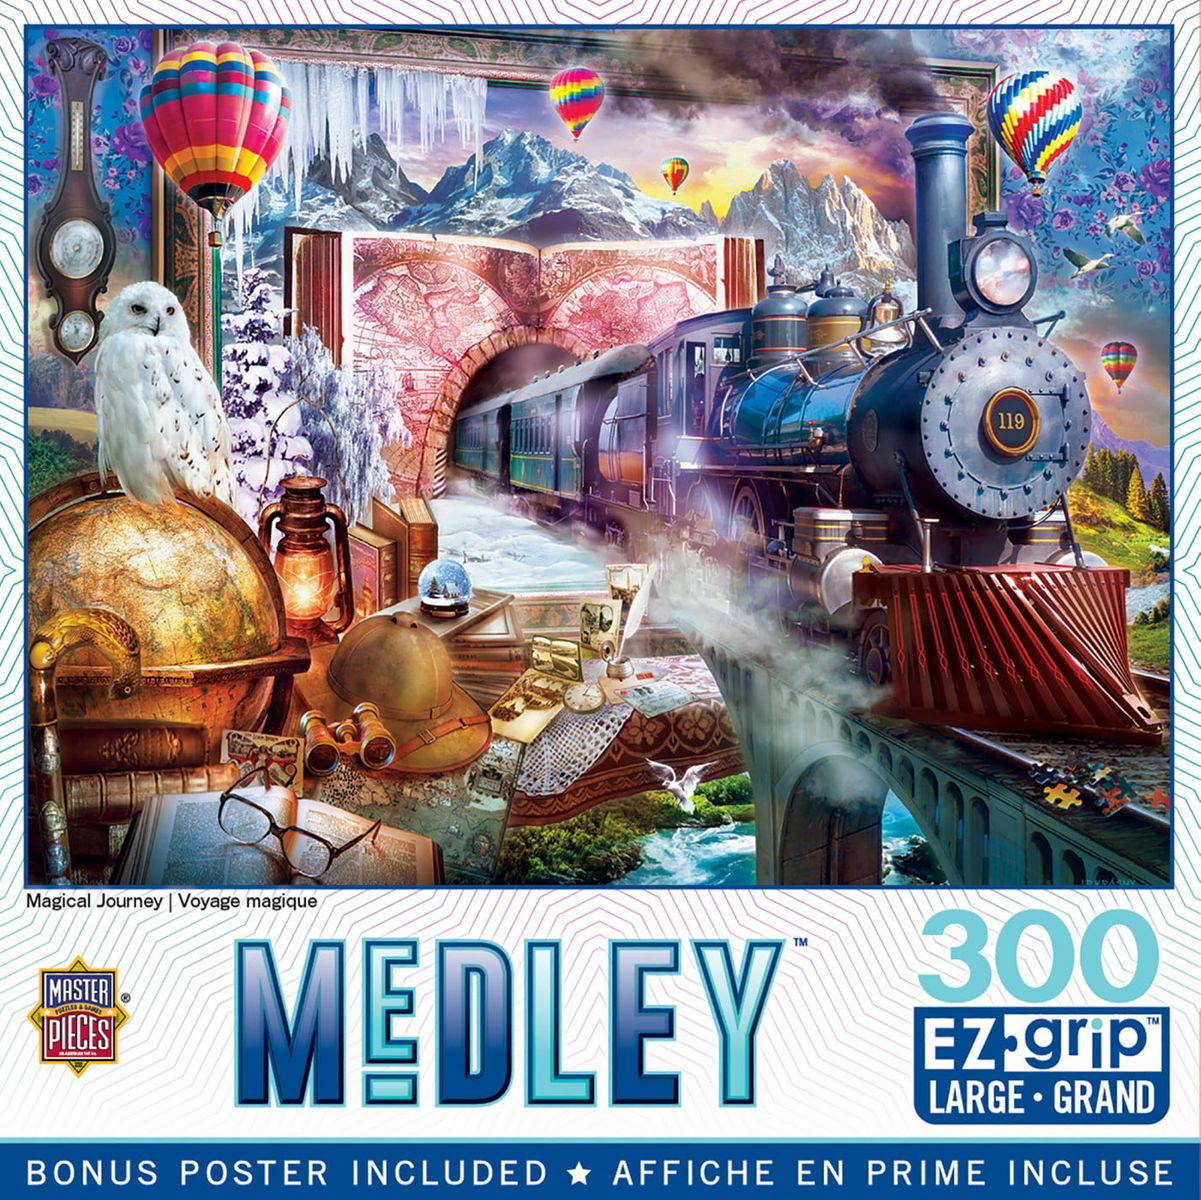 [送料無料] MasterPieces 300ピース EZ Grip ジグソーパズル - Magical Journey - 18 "x24" [楽天海外通販] | MasterPieces 300 Piece EZ Grip Jigsaw Puzzle - Magical Journey - 18"x24"